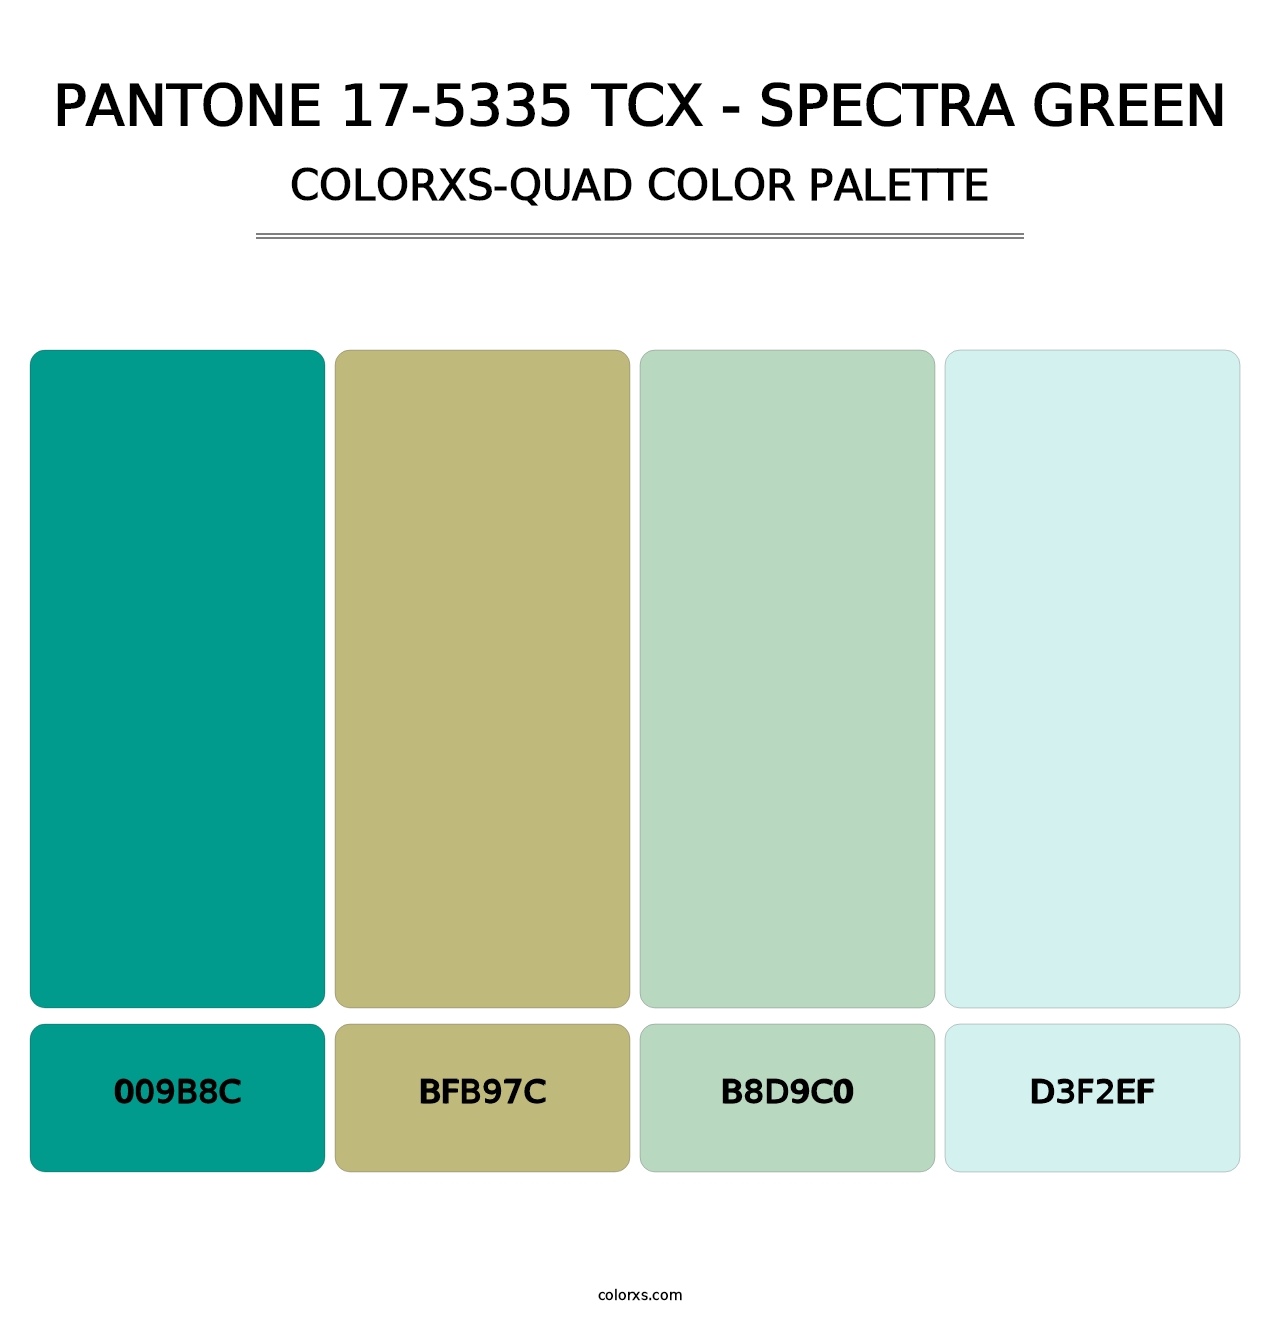 PANTONE 17-5335 TCX - Spectra Green - Colorxs Quad Palette